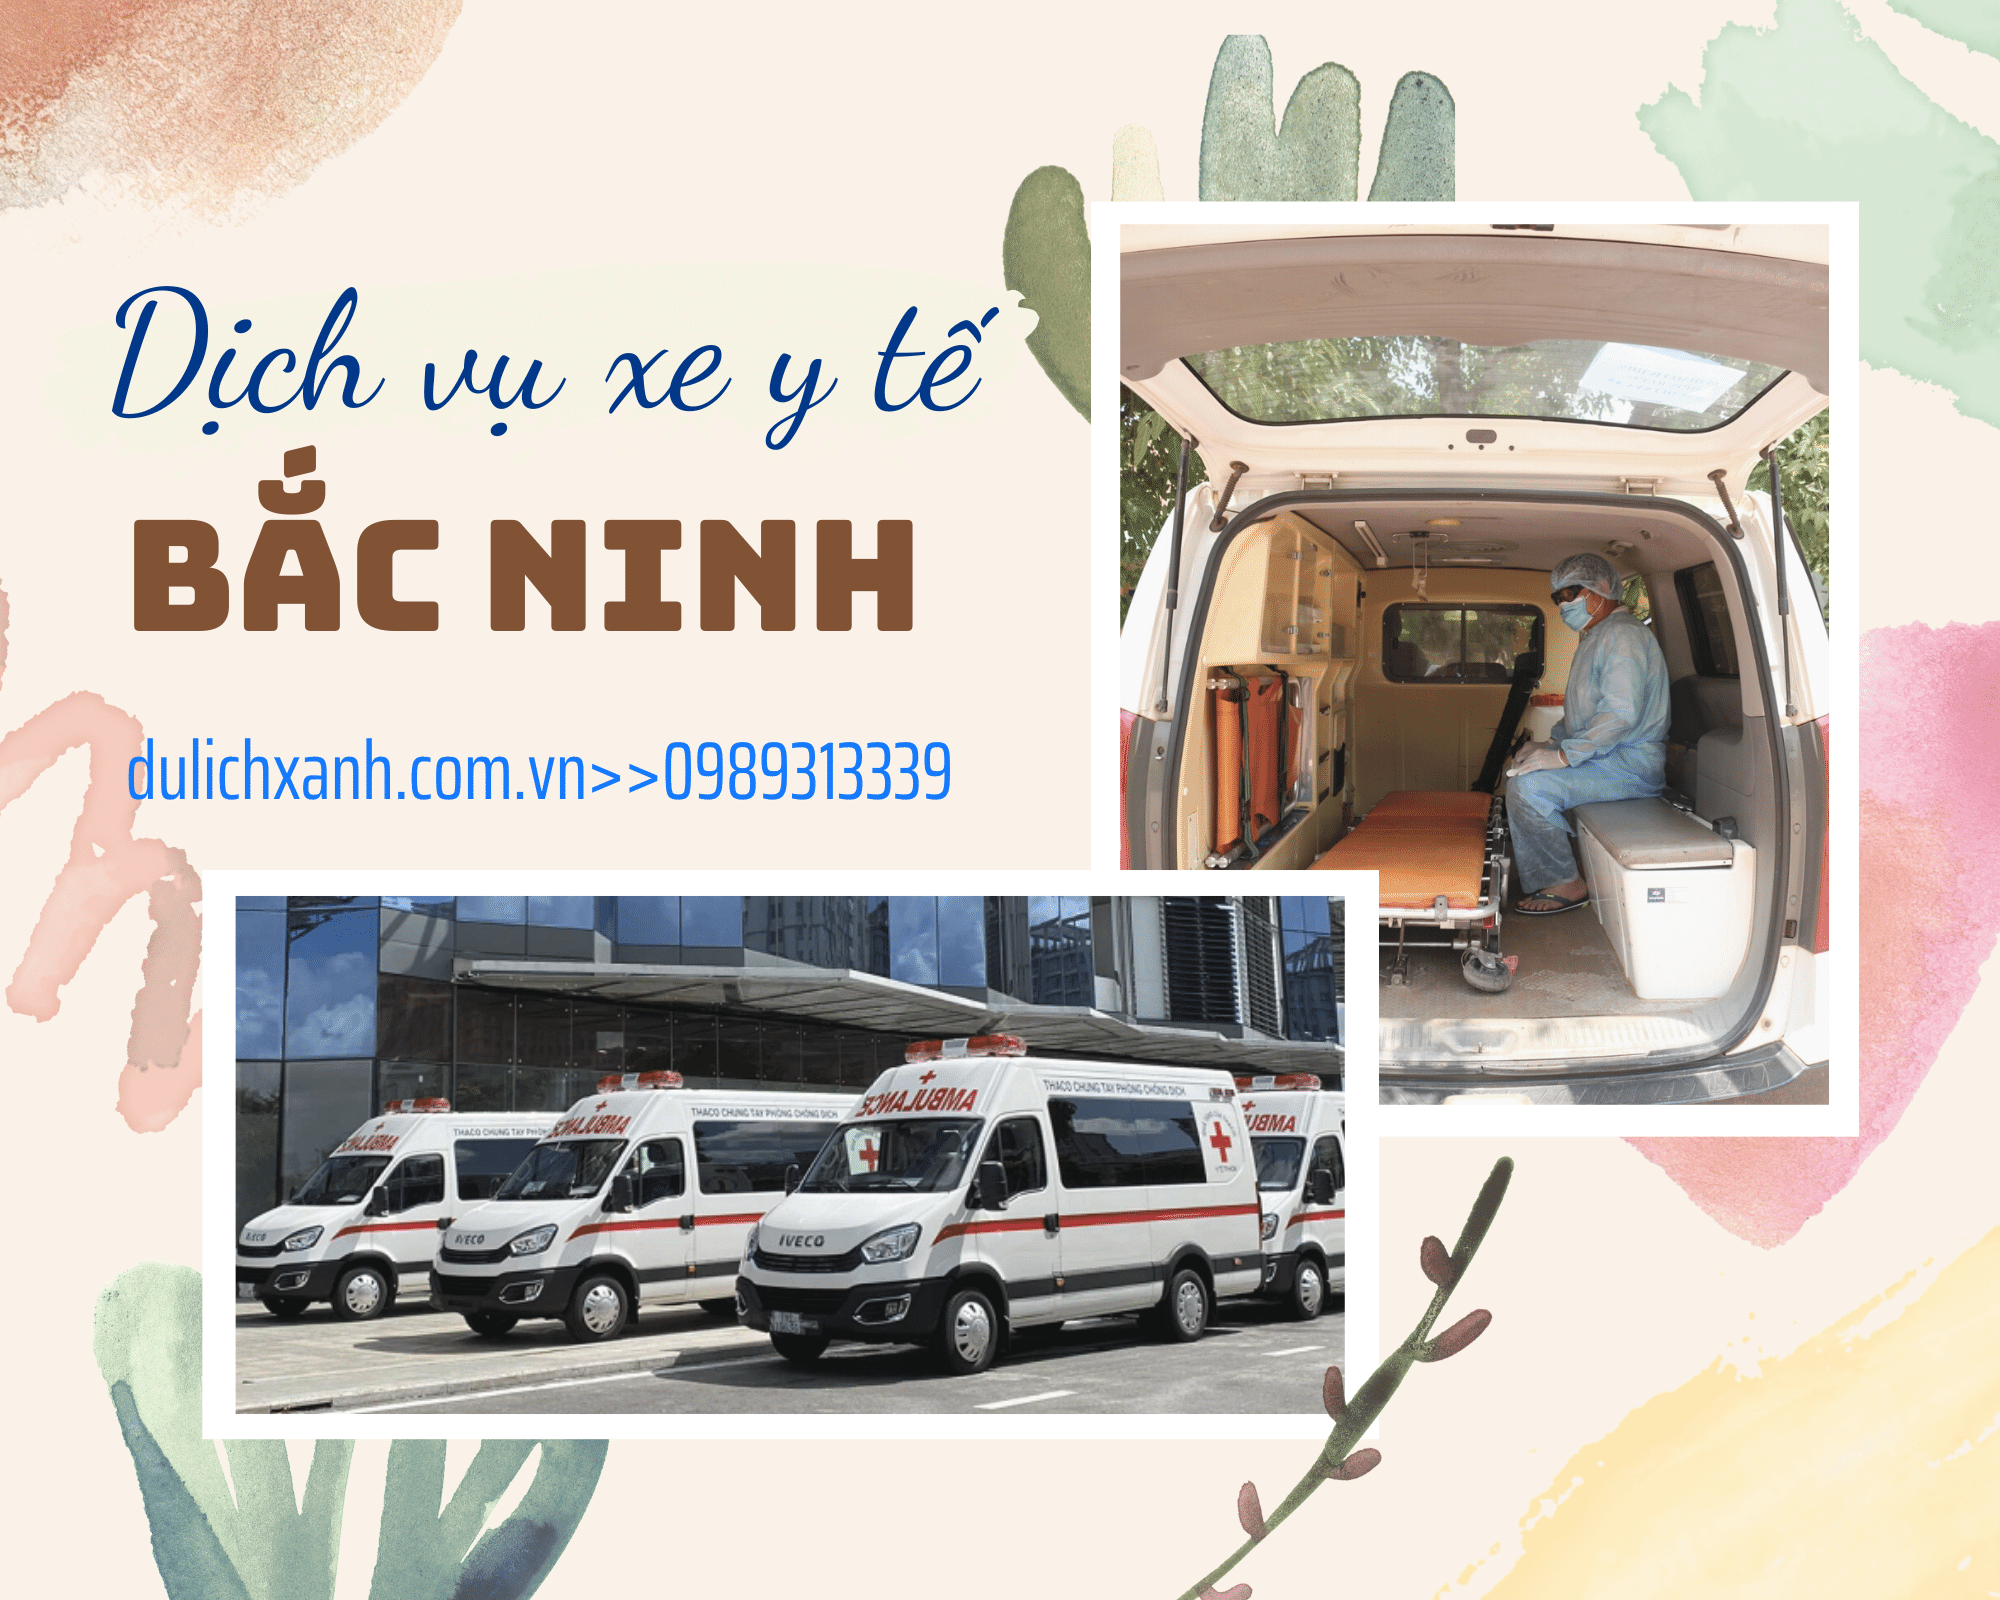 Dịch vụ xe Y tế đón tiễn cách ly tại Bắc Ninh